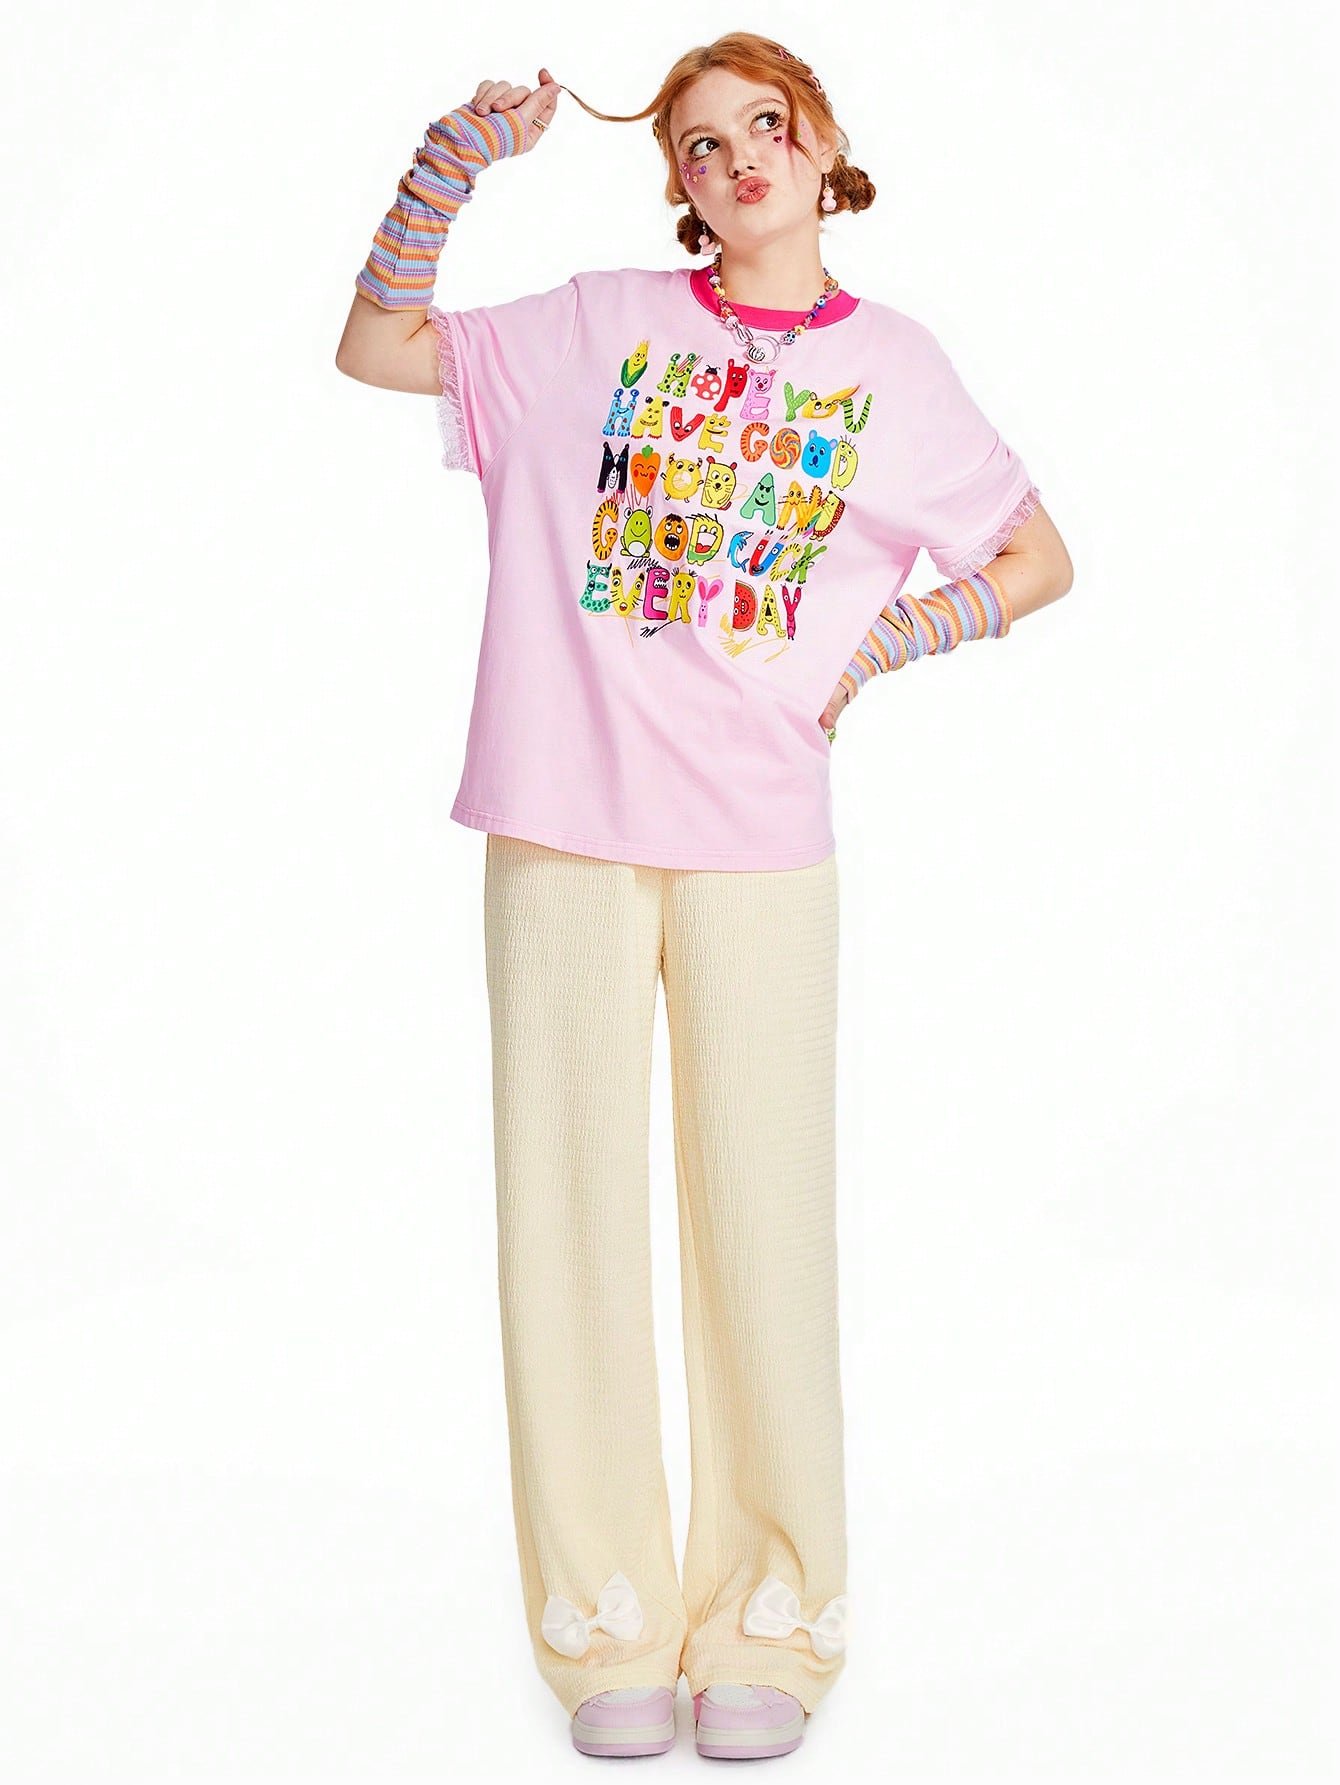 キッドコア Tシャツ コントラストカラー レターグラフィック 迷彩柄 トップス 女子カジュアル 可愛い